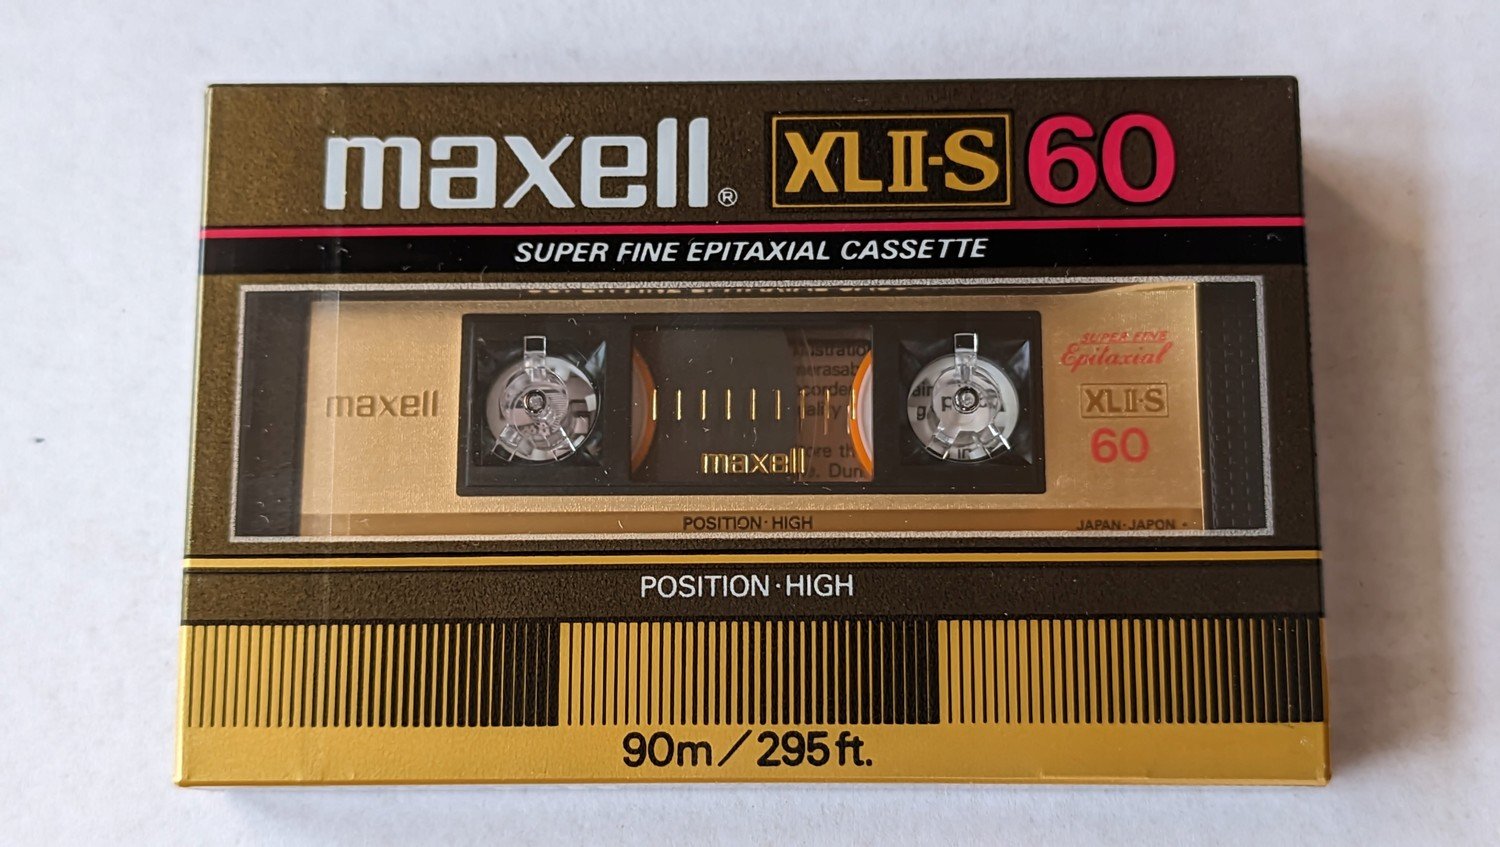 Maxell Xlii-s 60 1982/83r. 1ks